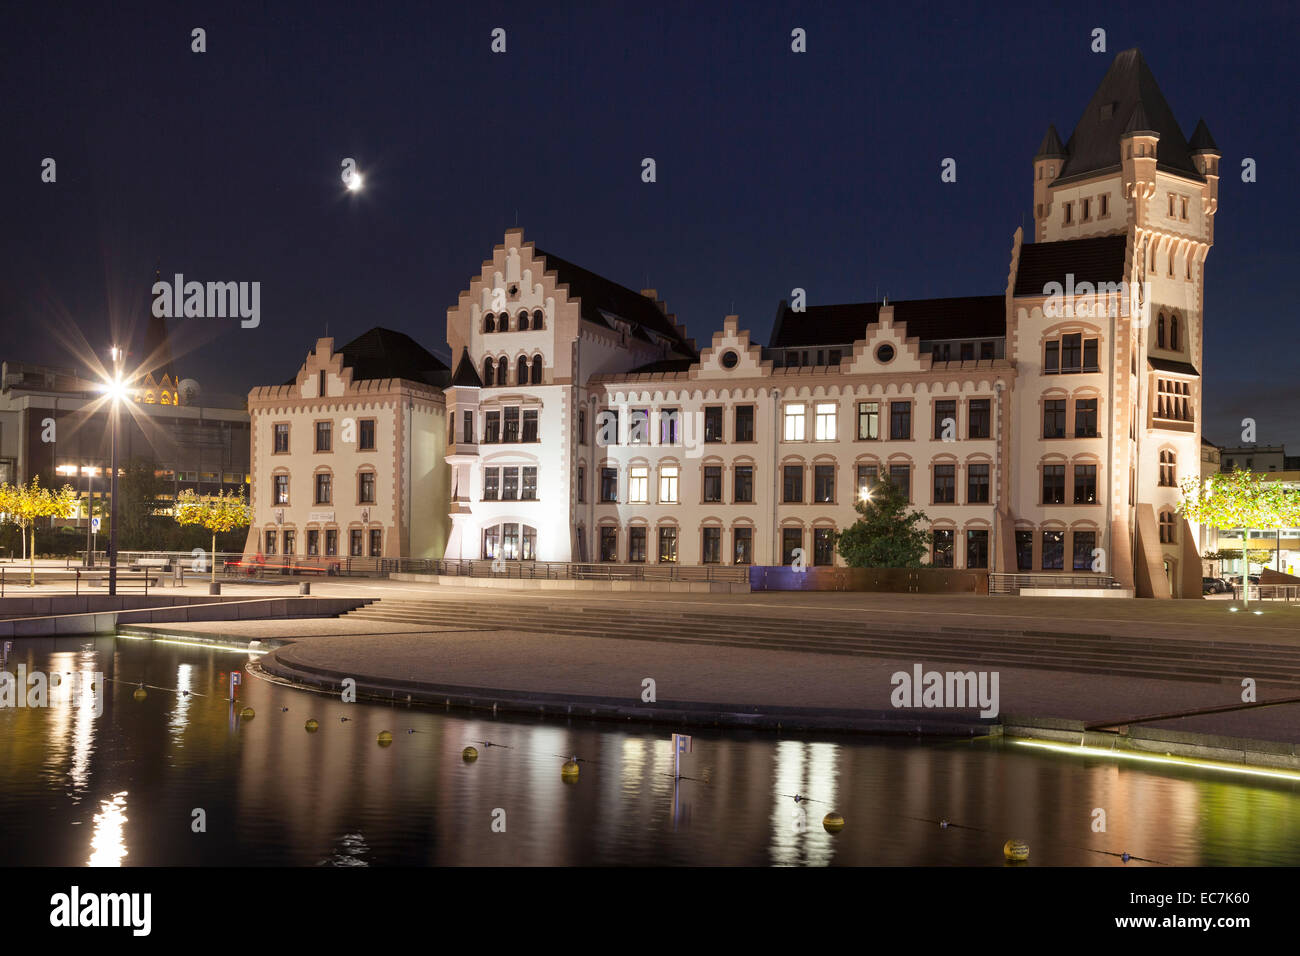 Germany, North Rhine-Westphalia, Dortmund-Hoerde, Phoenix Lake, Hoerde Castle at night Stock Photo